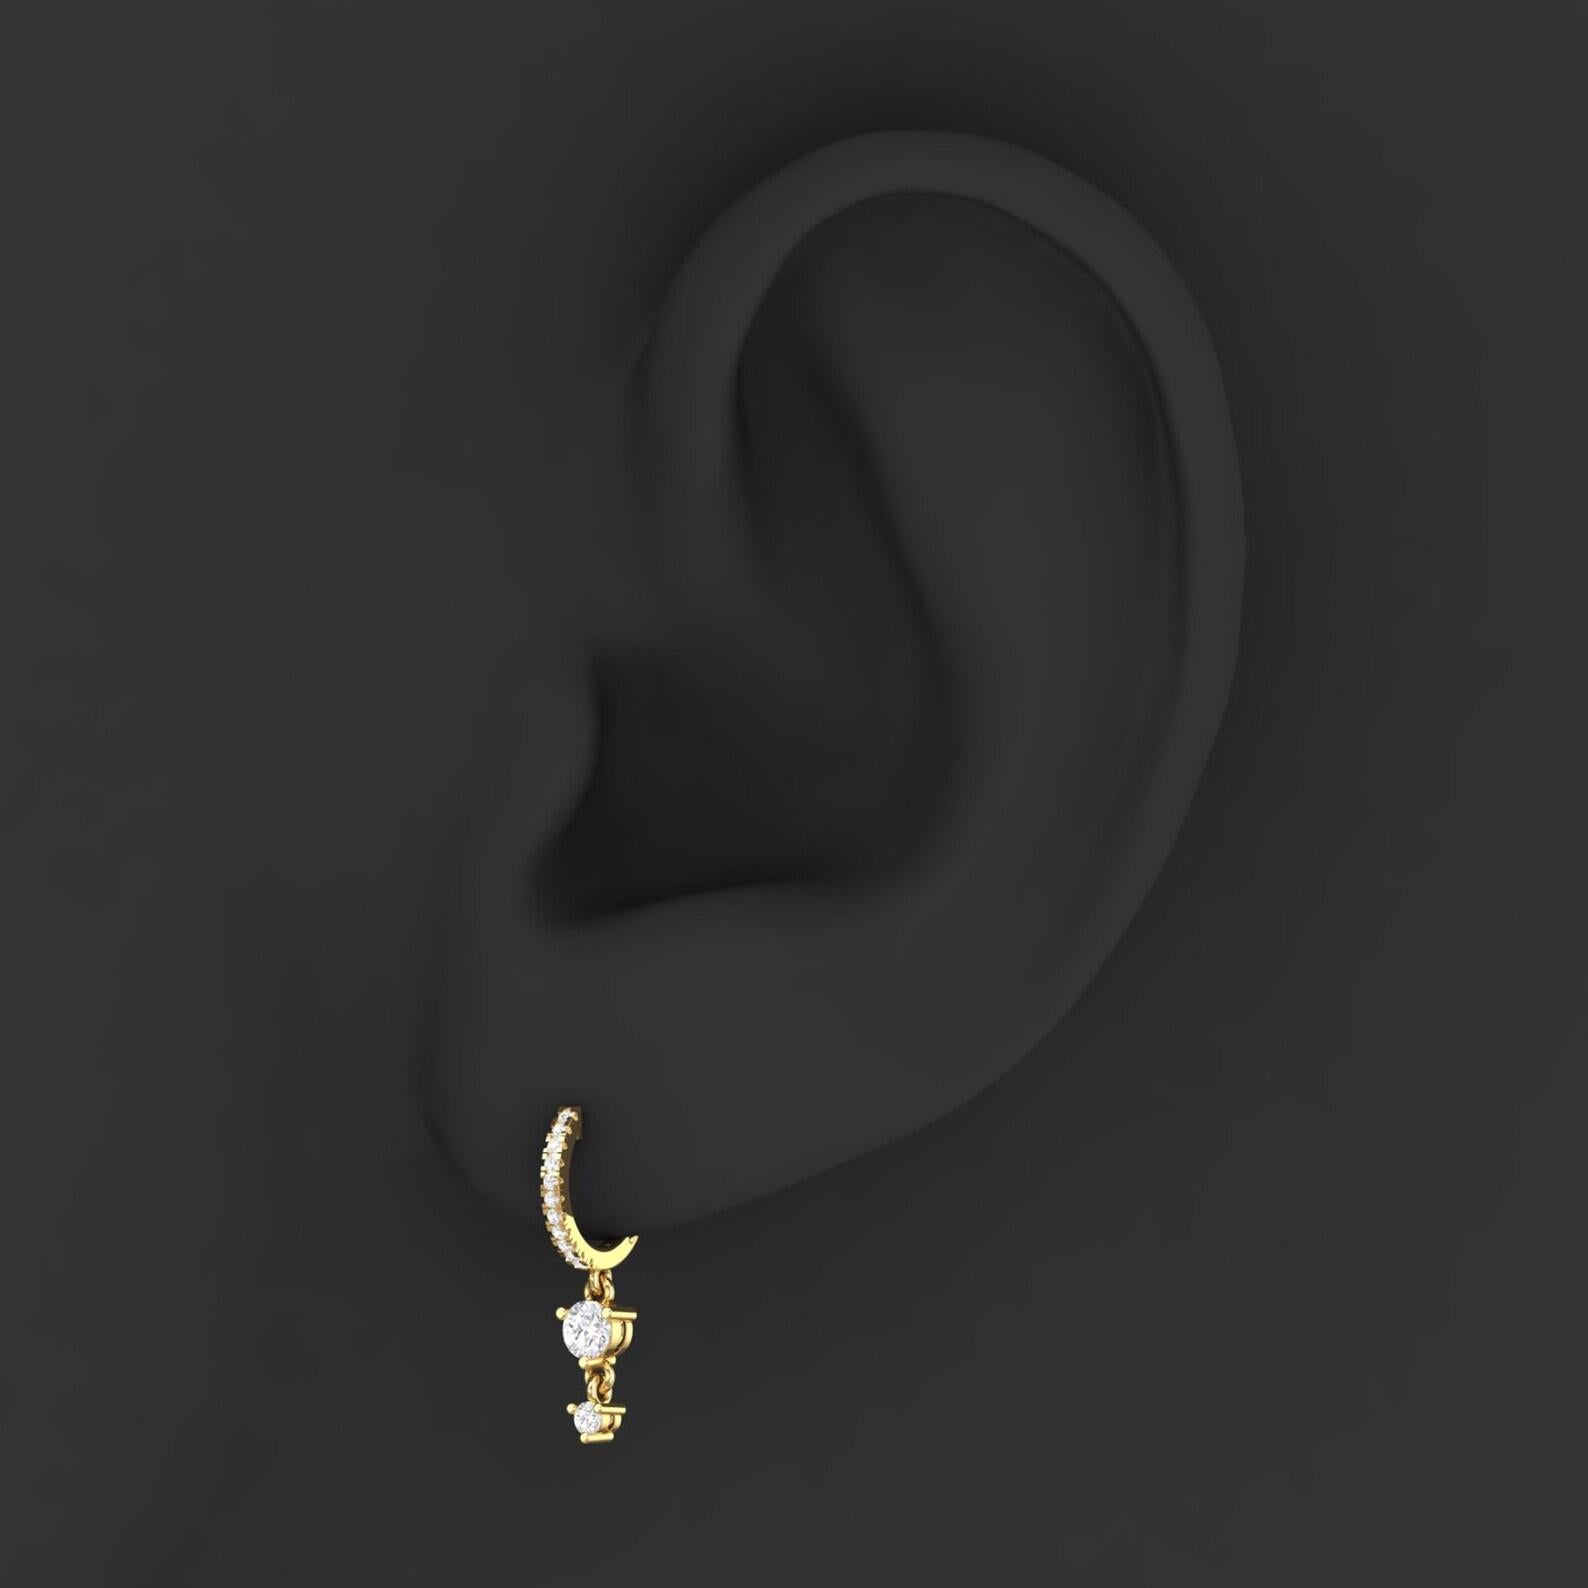 Gegossen in 14 Karat Gold. Diese wunderschönen Ohrringe sind von Hand mit funkelnden Diamanten von 0,25 Karat besetzt. Erhältlich in Gelb-, Rosé- und Weißgold.  Verkauft in einem Paar, kann als Einzelstück gekauft werden ($1750)  

FOLLOW MEGHNA